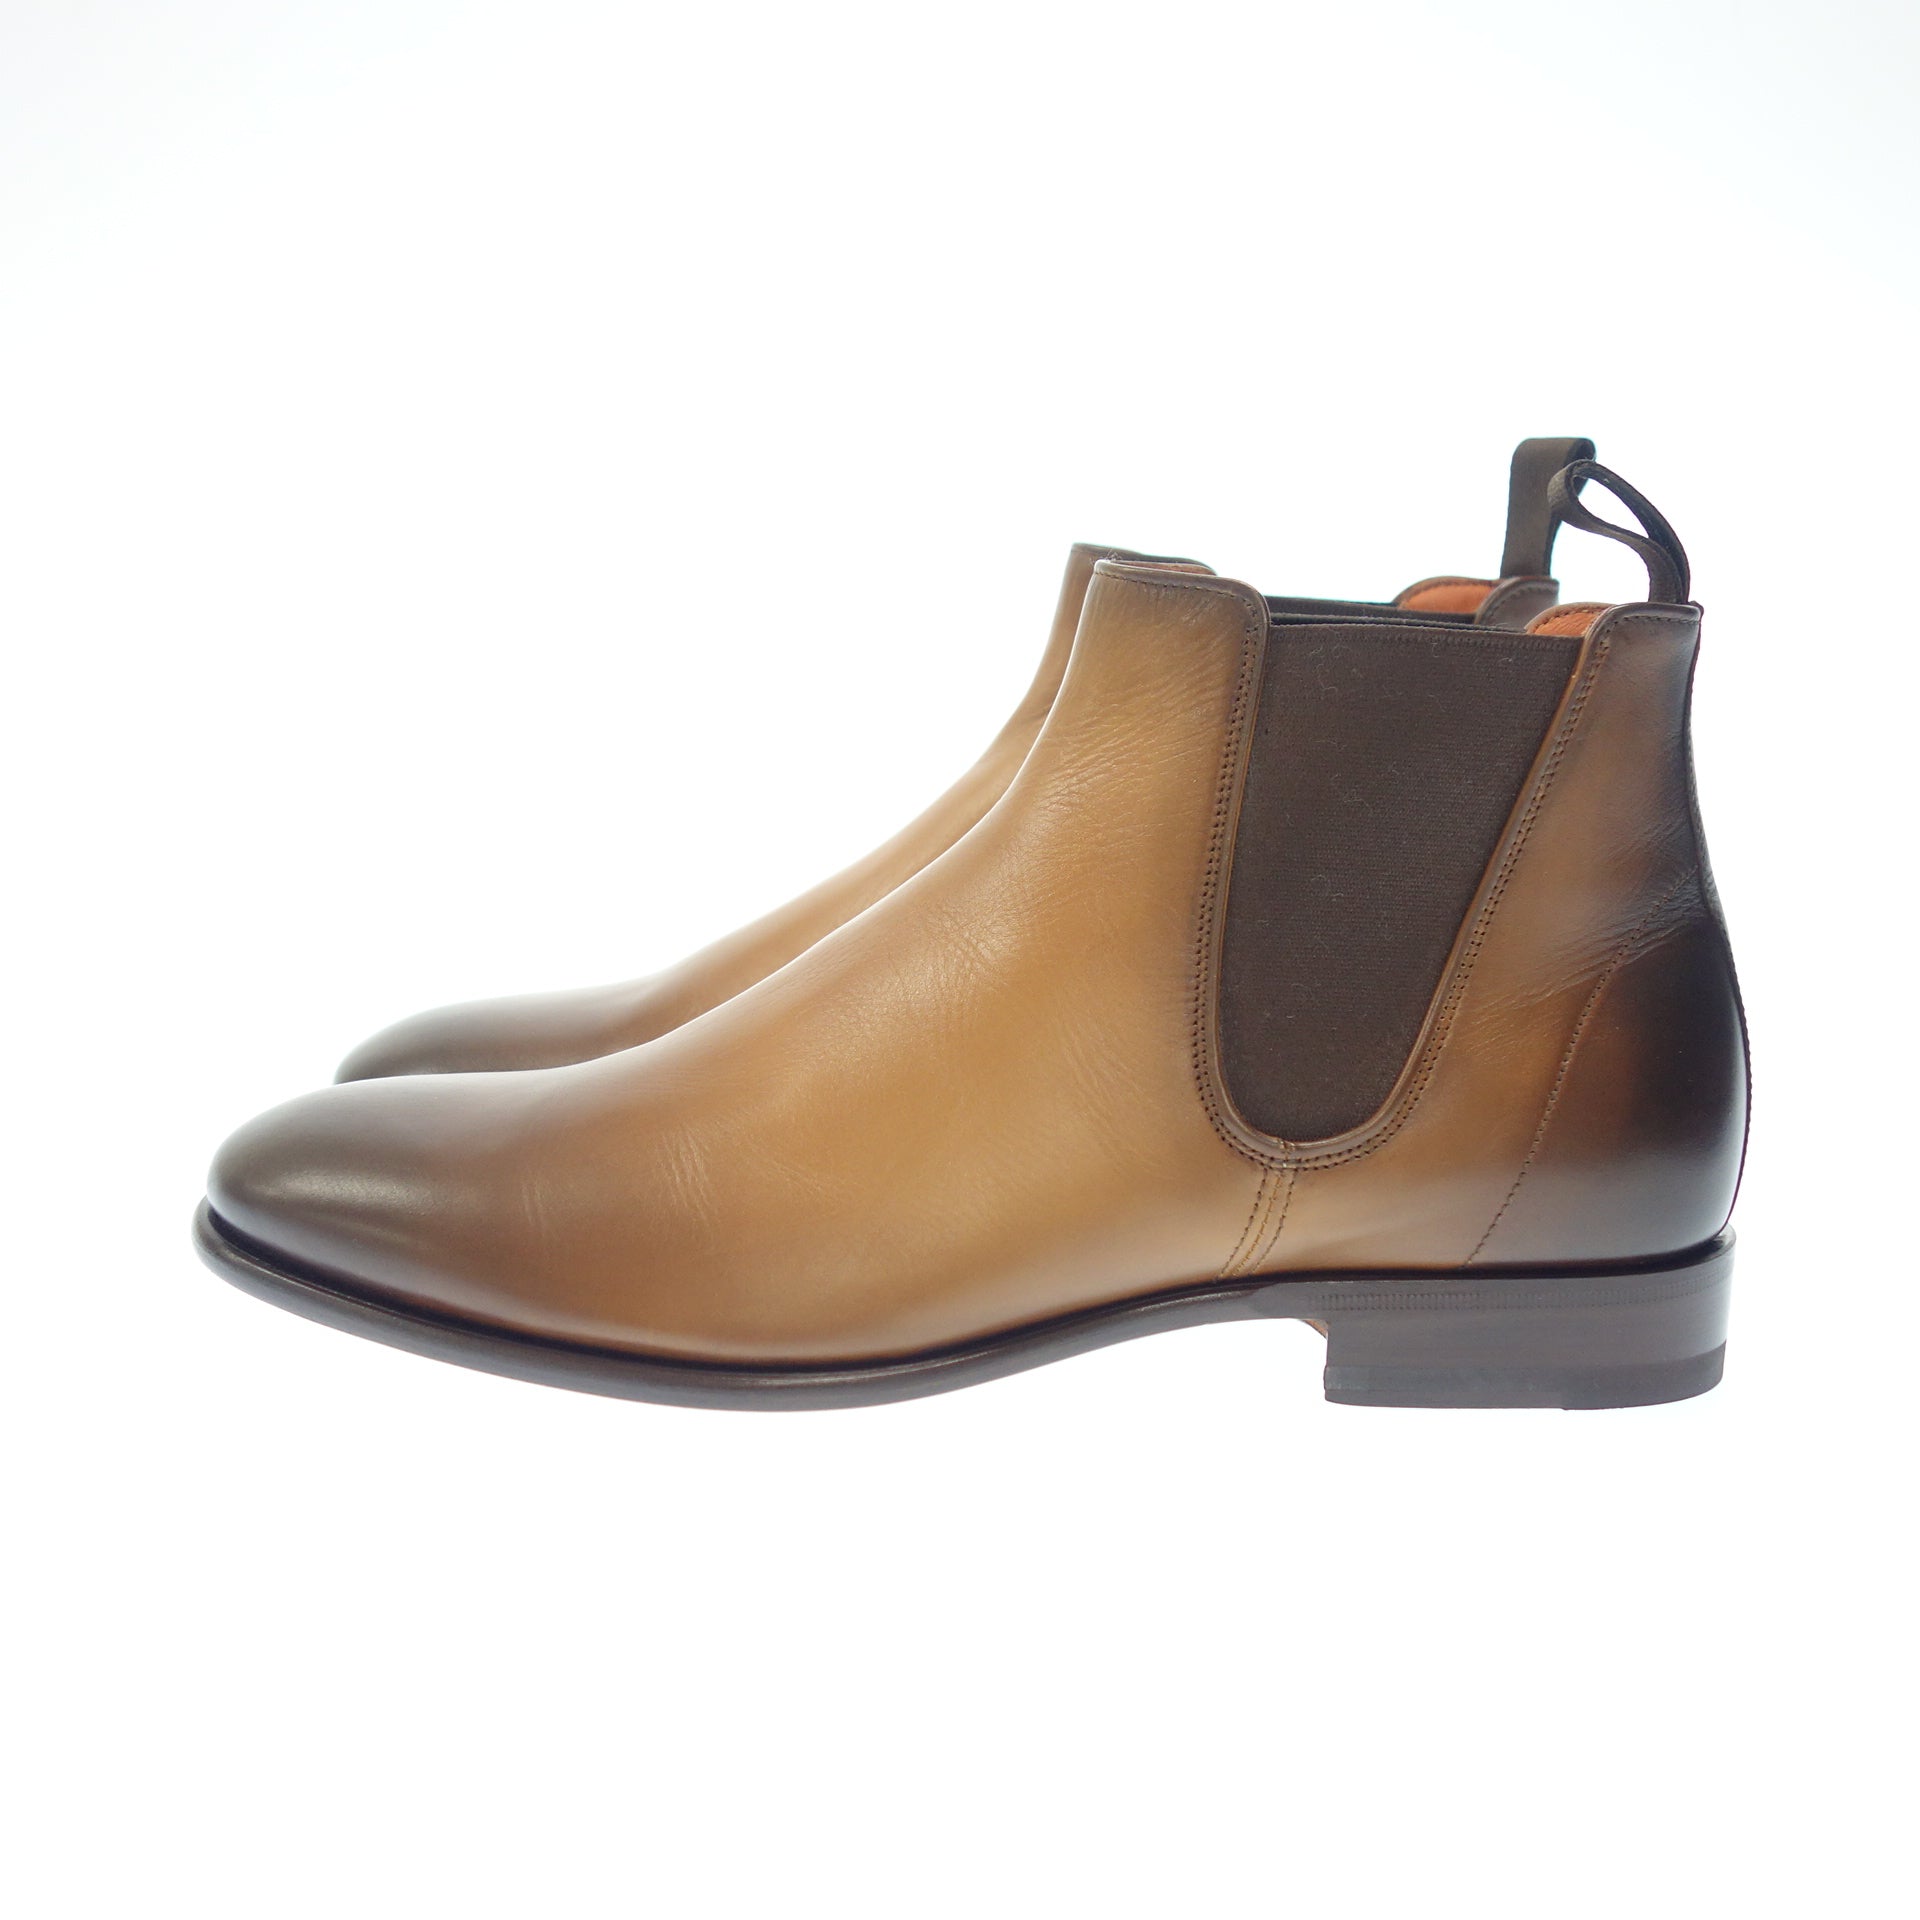 【新品】Santoni(サントーニ) ブーツ サイズ8.5デザインジップブーツ